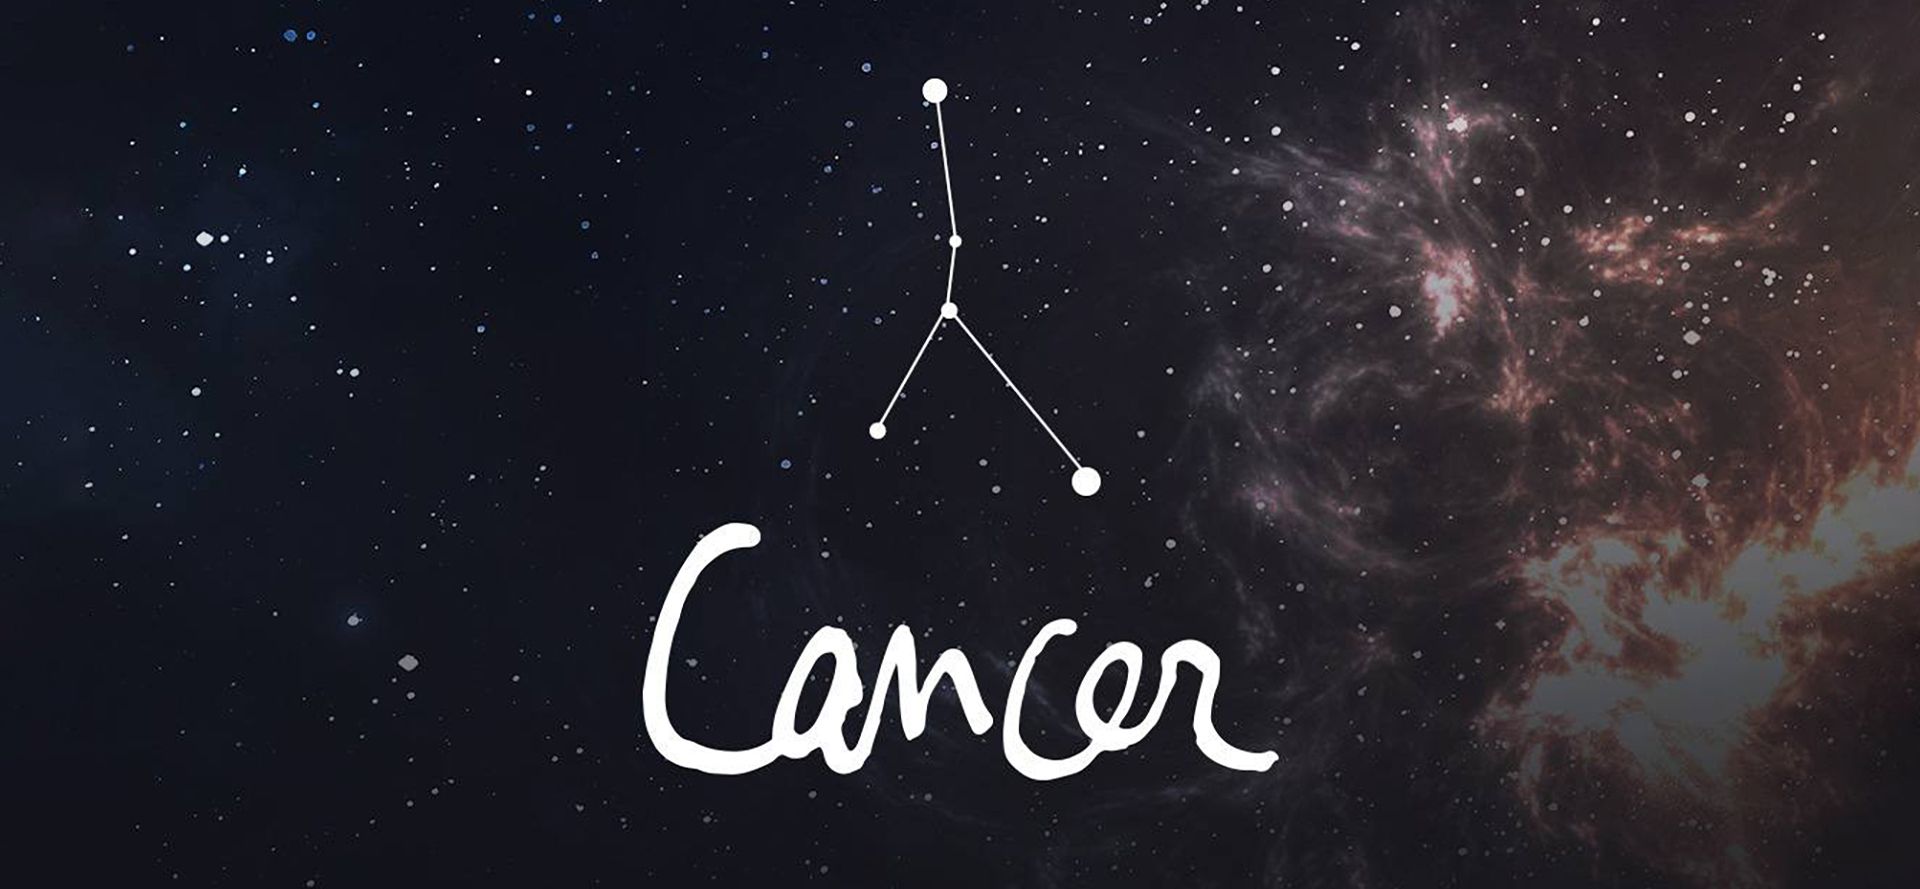 Cancer constellation.